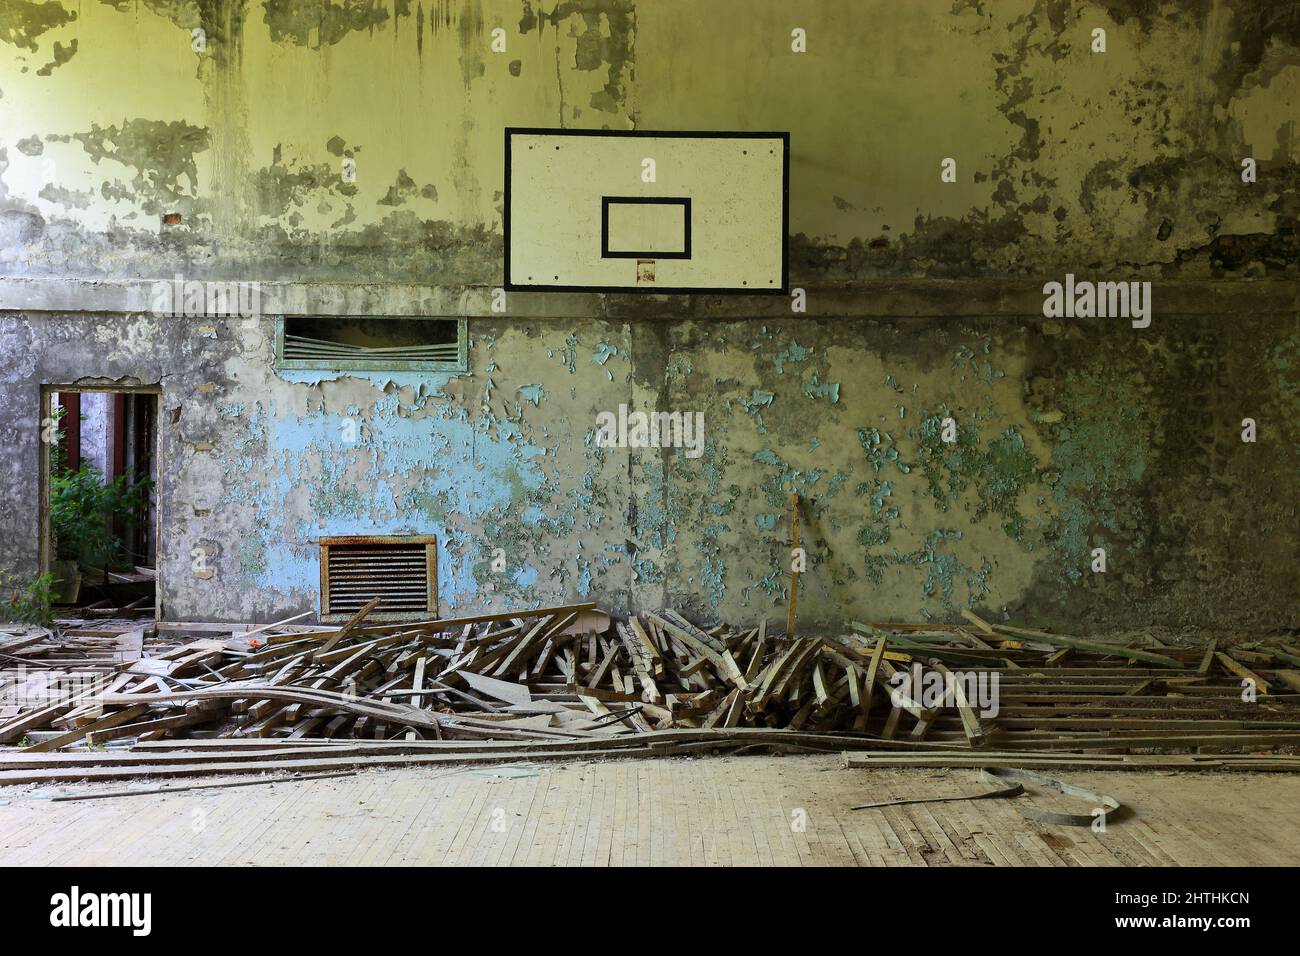 Ukraine, Sperrzone, Pripjat, in der unbewohnbaren 30 chilometri-zone um das Kraftwerk von Tschernobyl und der Arbeitersiedlung Pripjat, Turnhalle Foto Stock